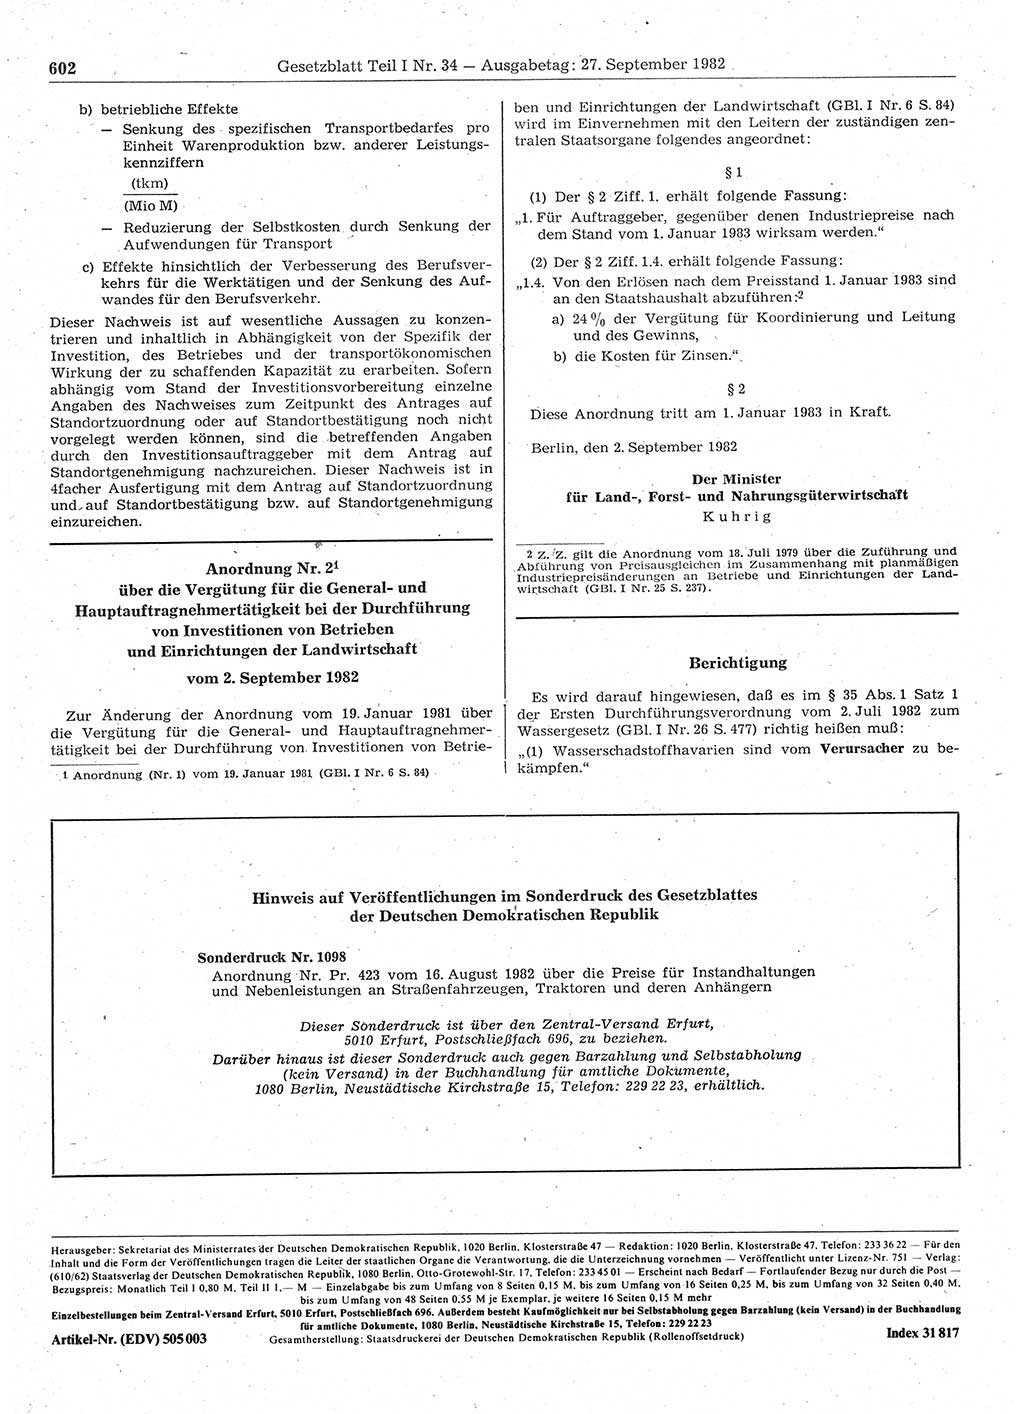 Gesetzblatt (GBl.) der Deutschen Demokratischen Republik (DDR) Teil Ⅰ 1982, Seite 602 (GBl. DDR Ⅰ 1982, S. 602)